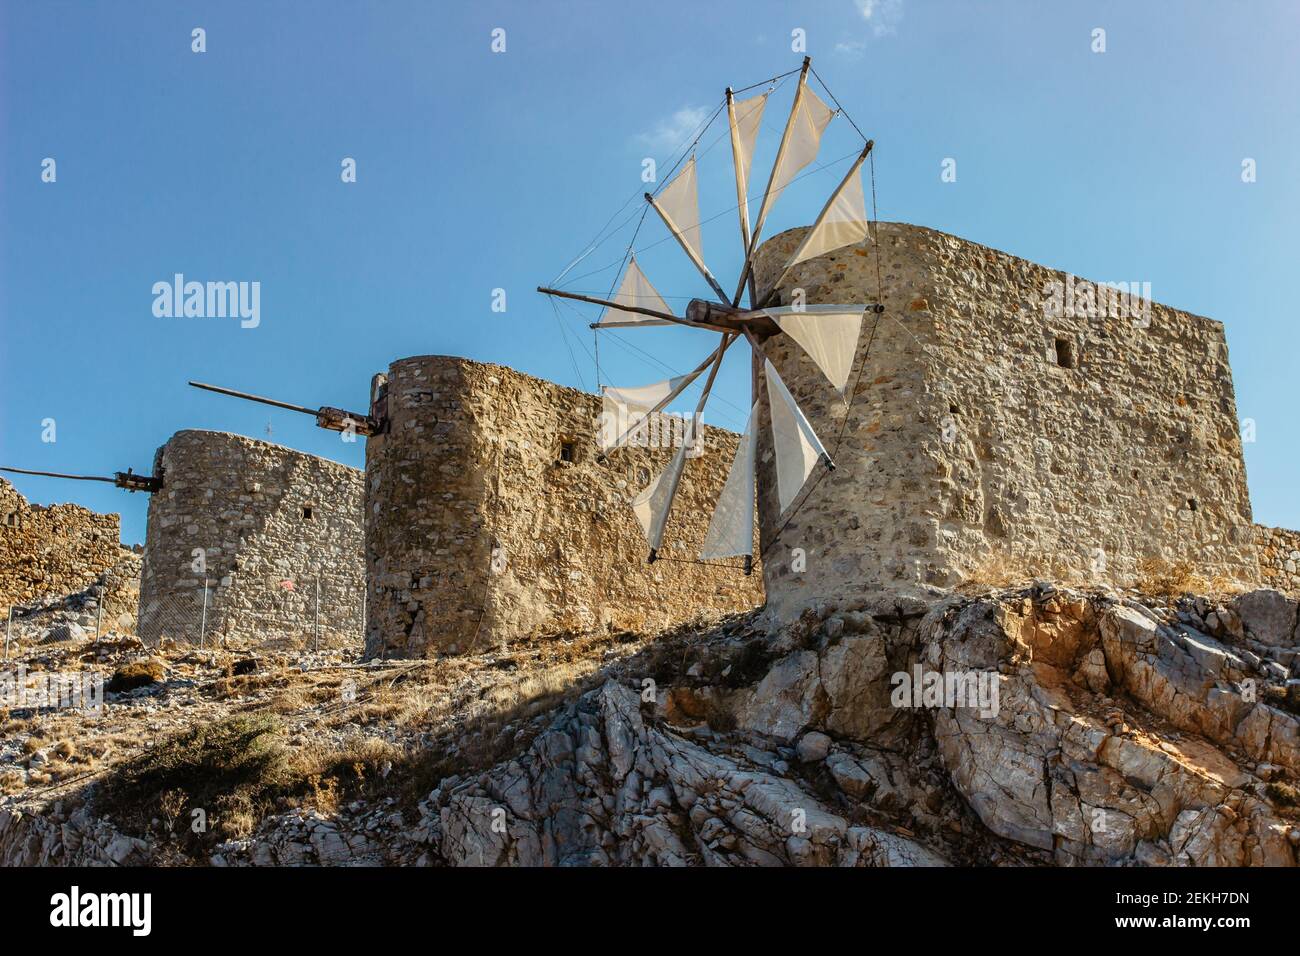 Tranquillo altopiano di Lassithi famoso per i vecchi mulini a vento in pietra, Creta, Grecia. Abbandonati iconici mulini a vento Circondato da picchi rocciosi selvaggi. Visita turistica a Mediter Foto Stock